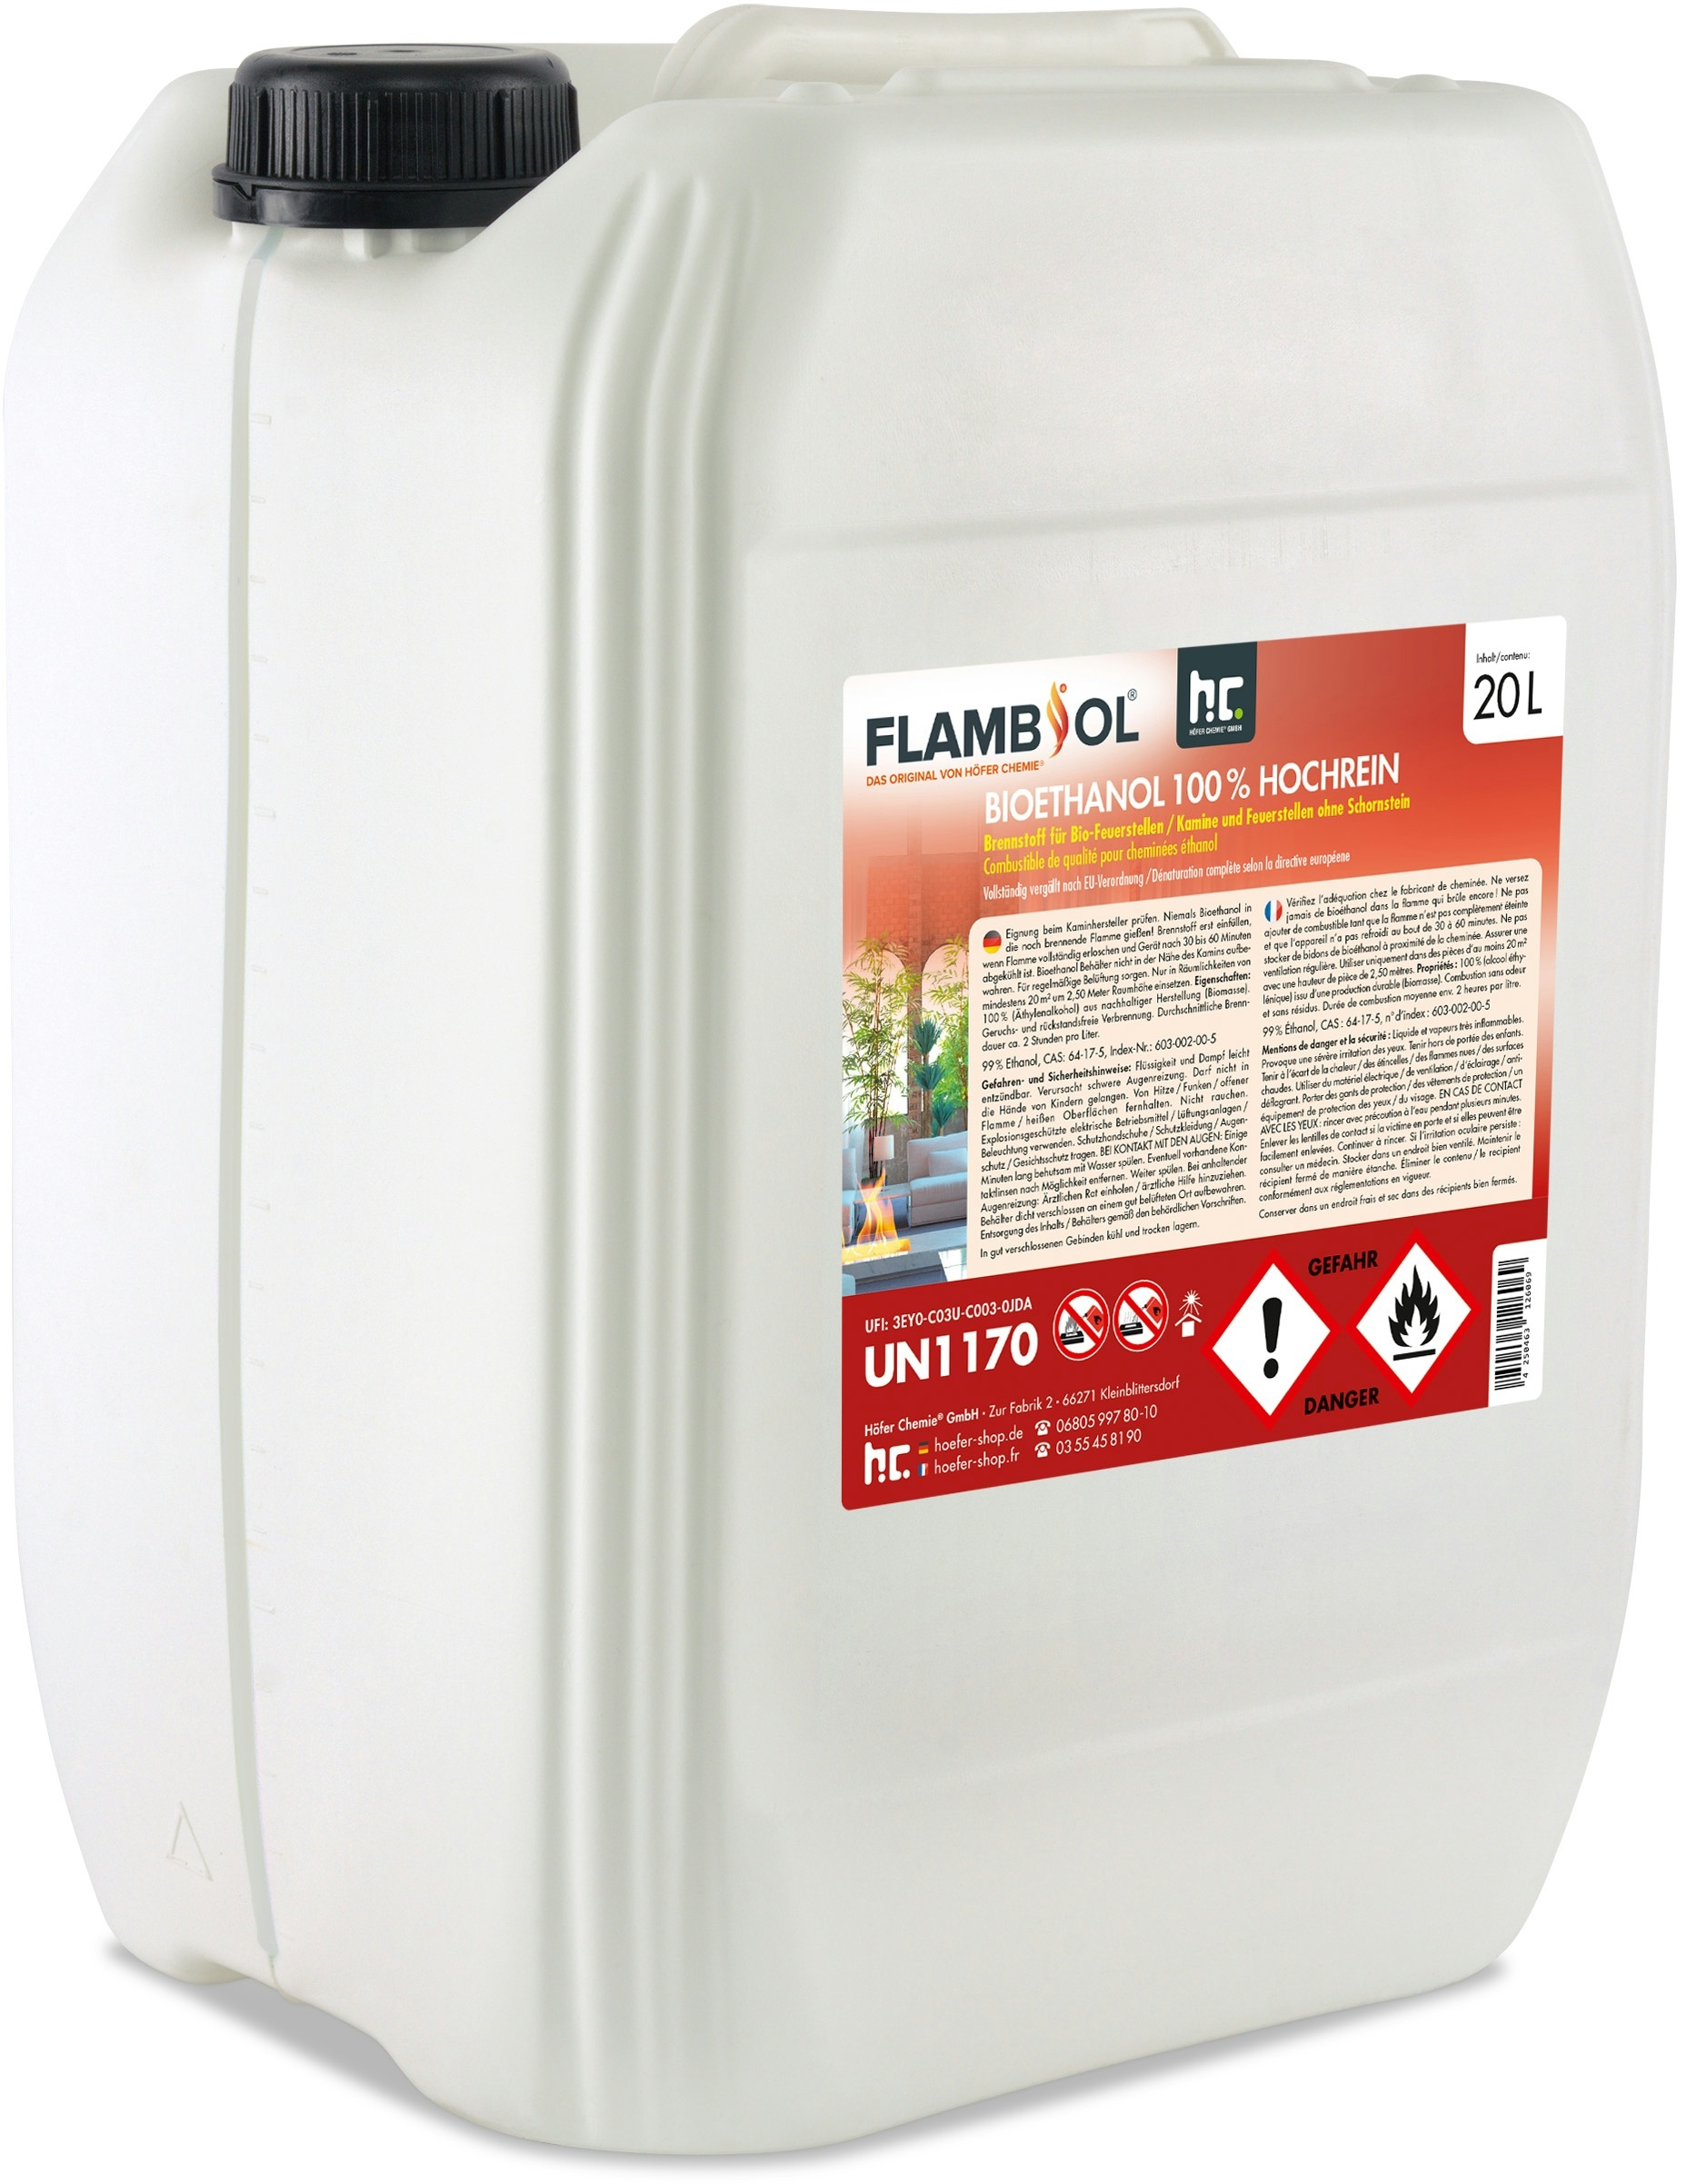 2 x 20 Liter FLAMBIOL® Bioethanol 100% Hochrein